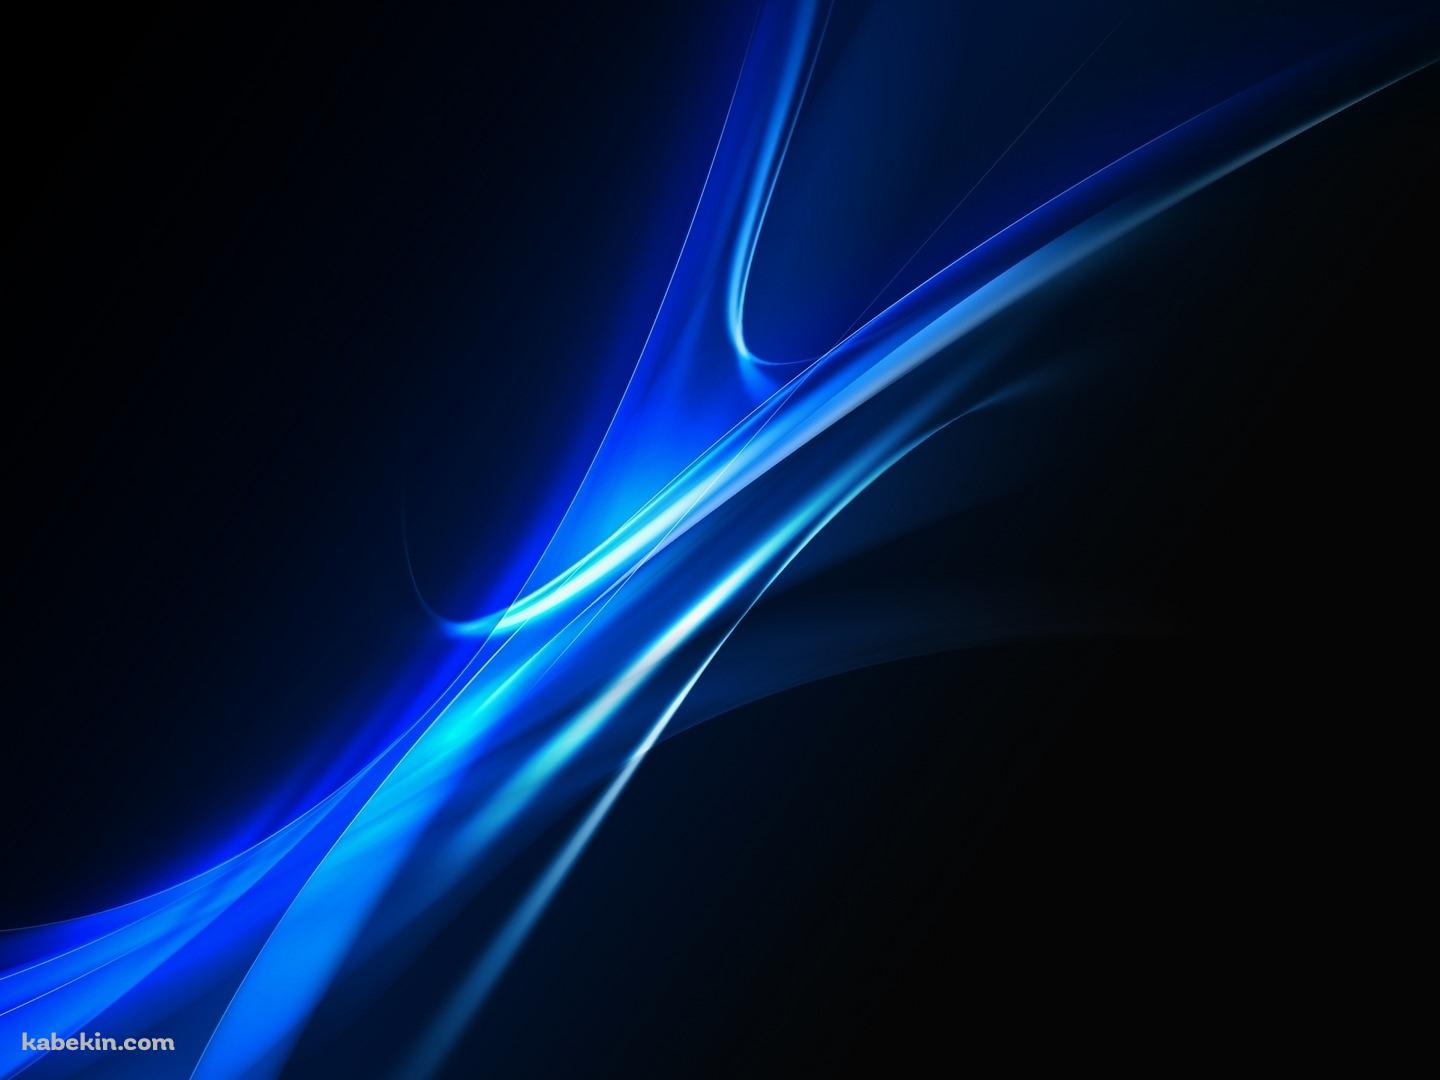 光沢のある青い曲線の壁紙(1440px x 1080px) 高画質 PC・デスクトップ用